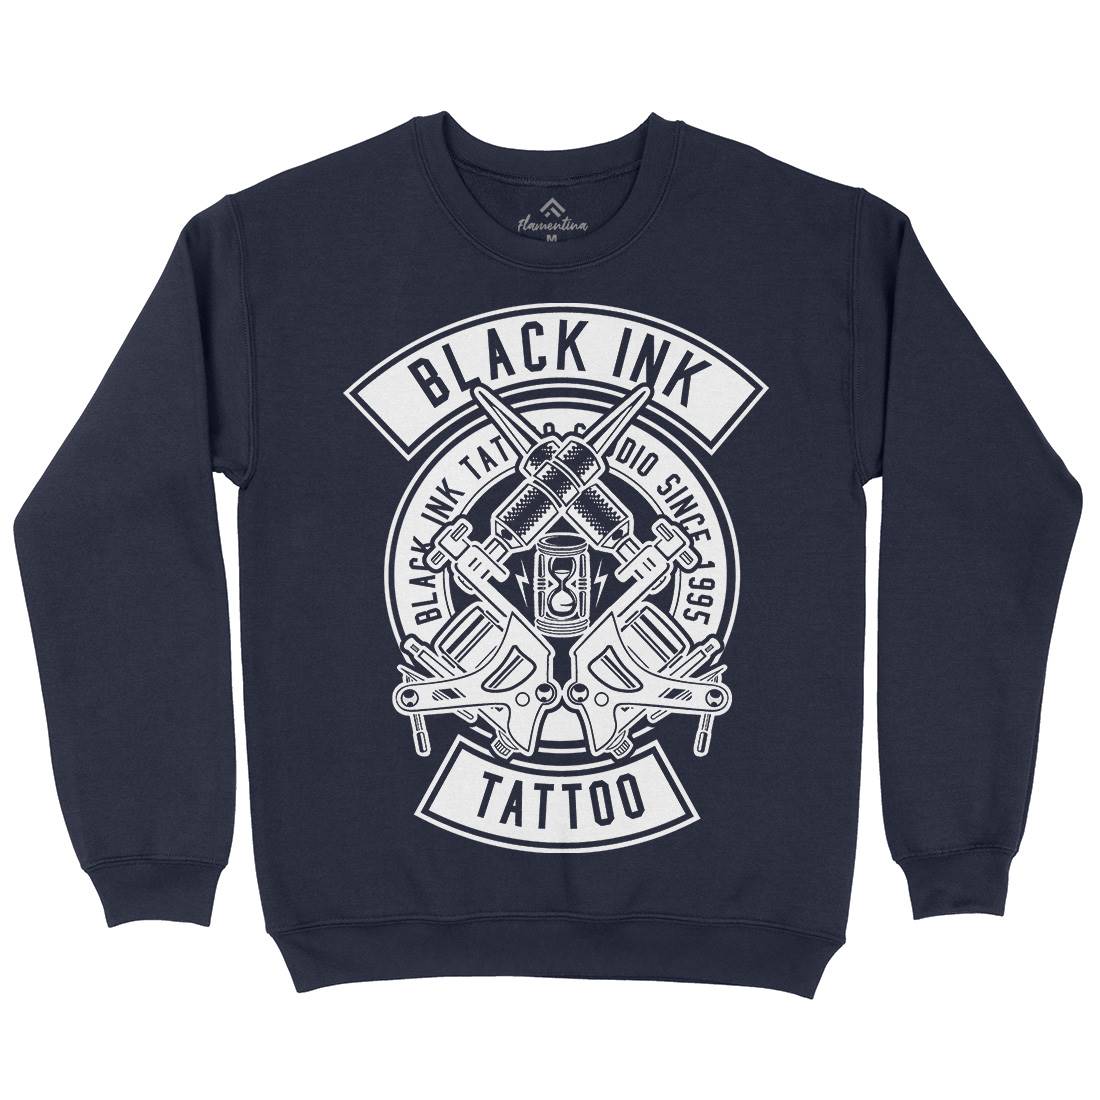 Black Ink Kids Crew Neck Sweatshirt Tattoo B500